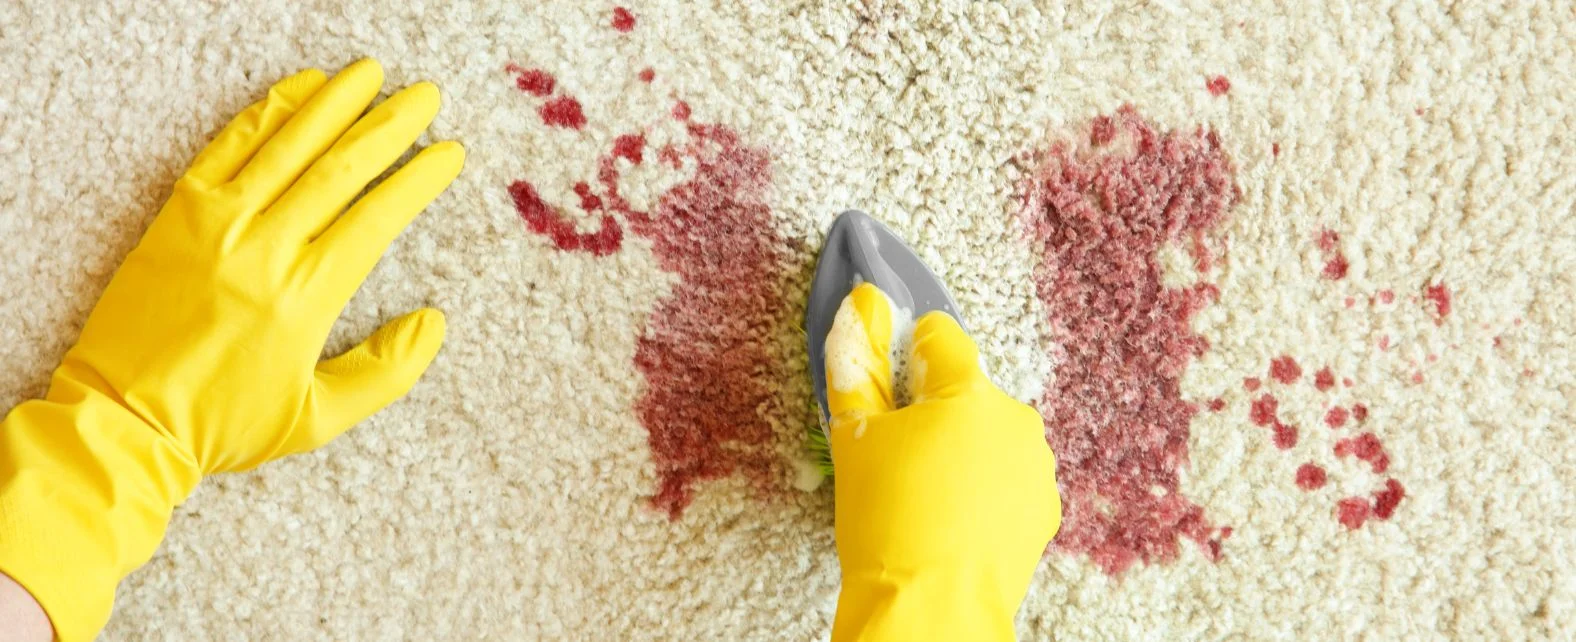 Nettoyage de taches de sang sur un tapis blanc avec une brosse